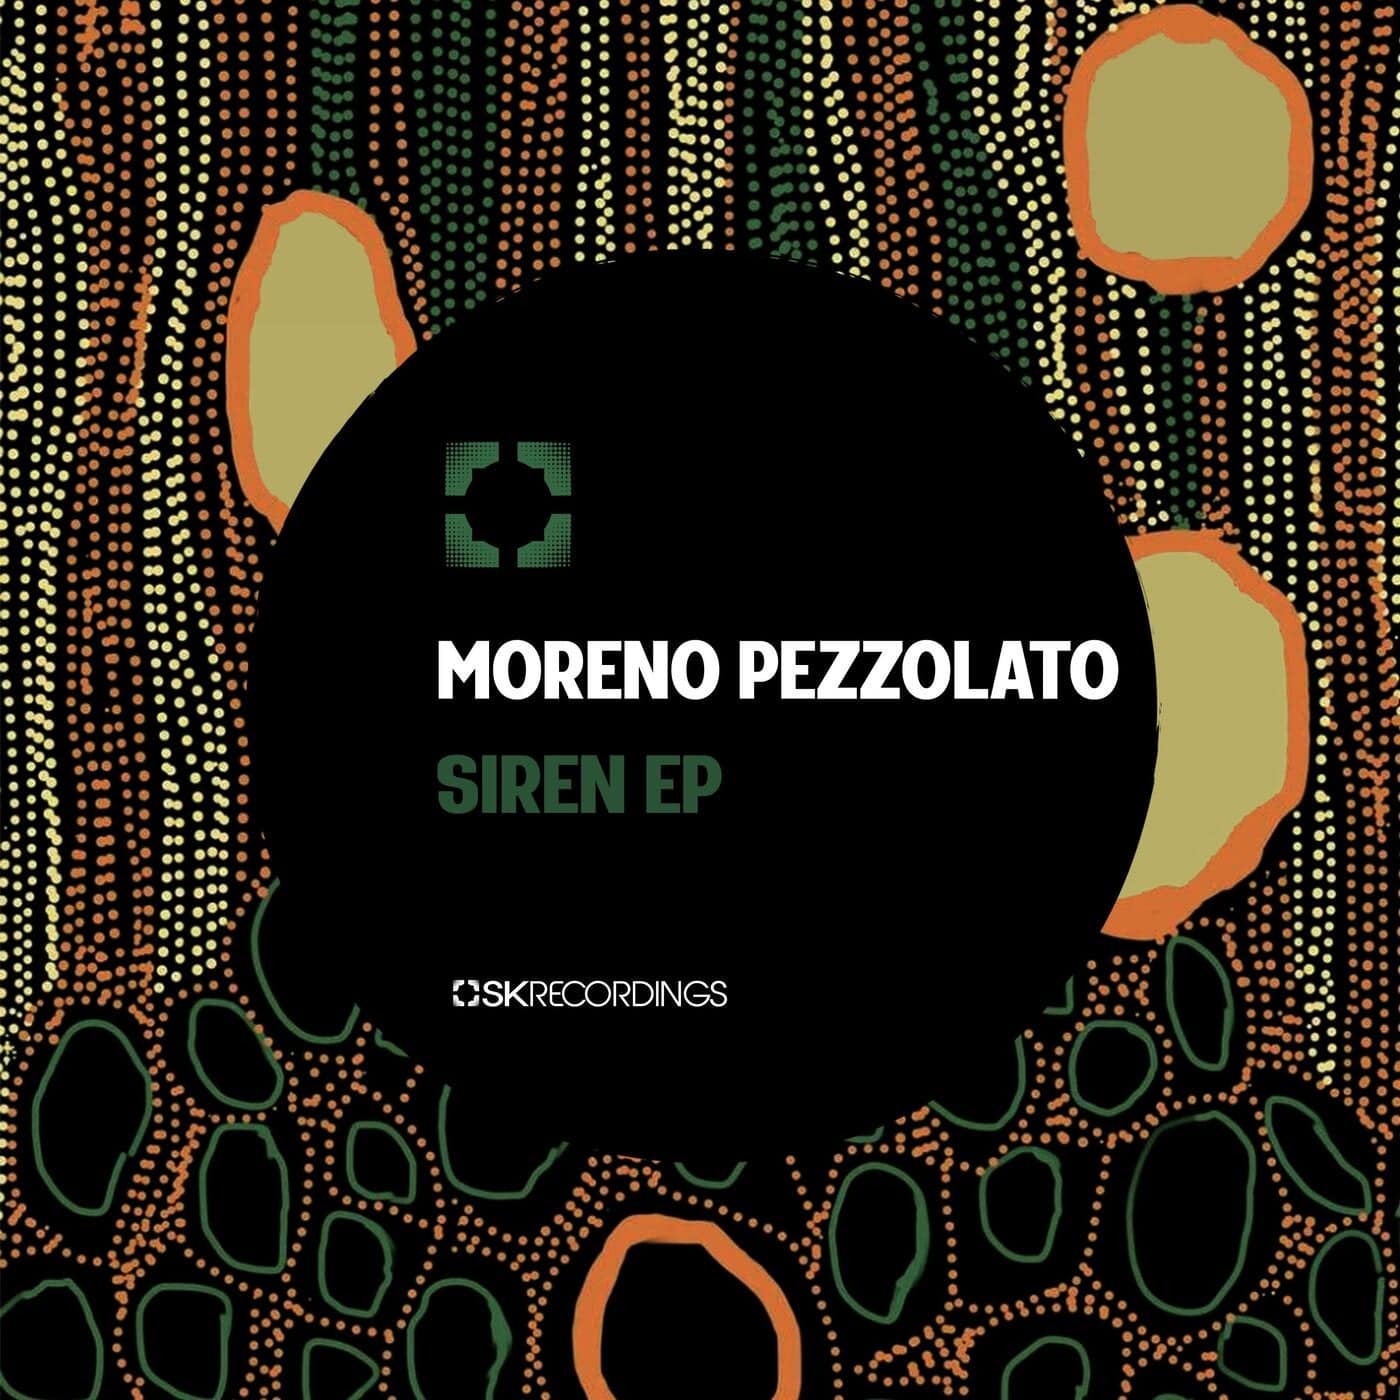 Download Moreno Pezzolato - Siren on Electrobuzz